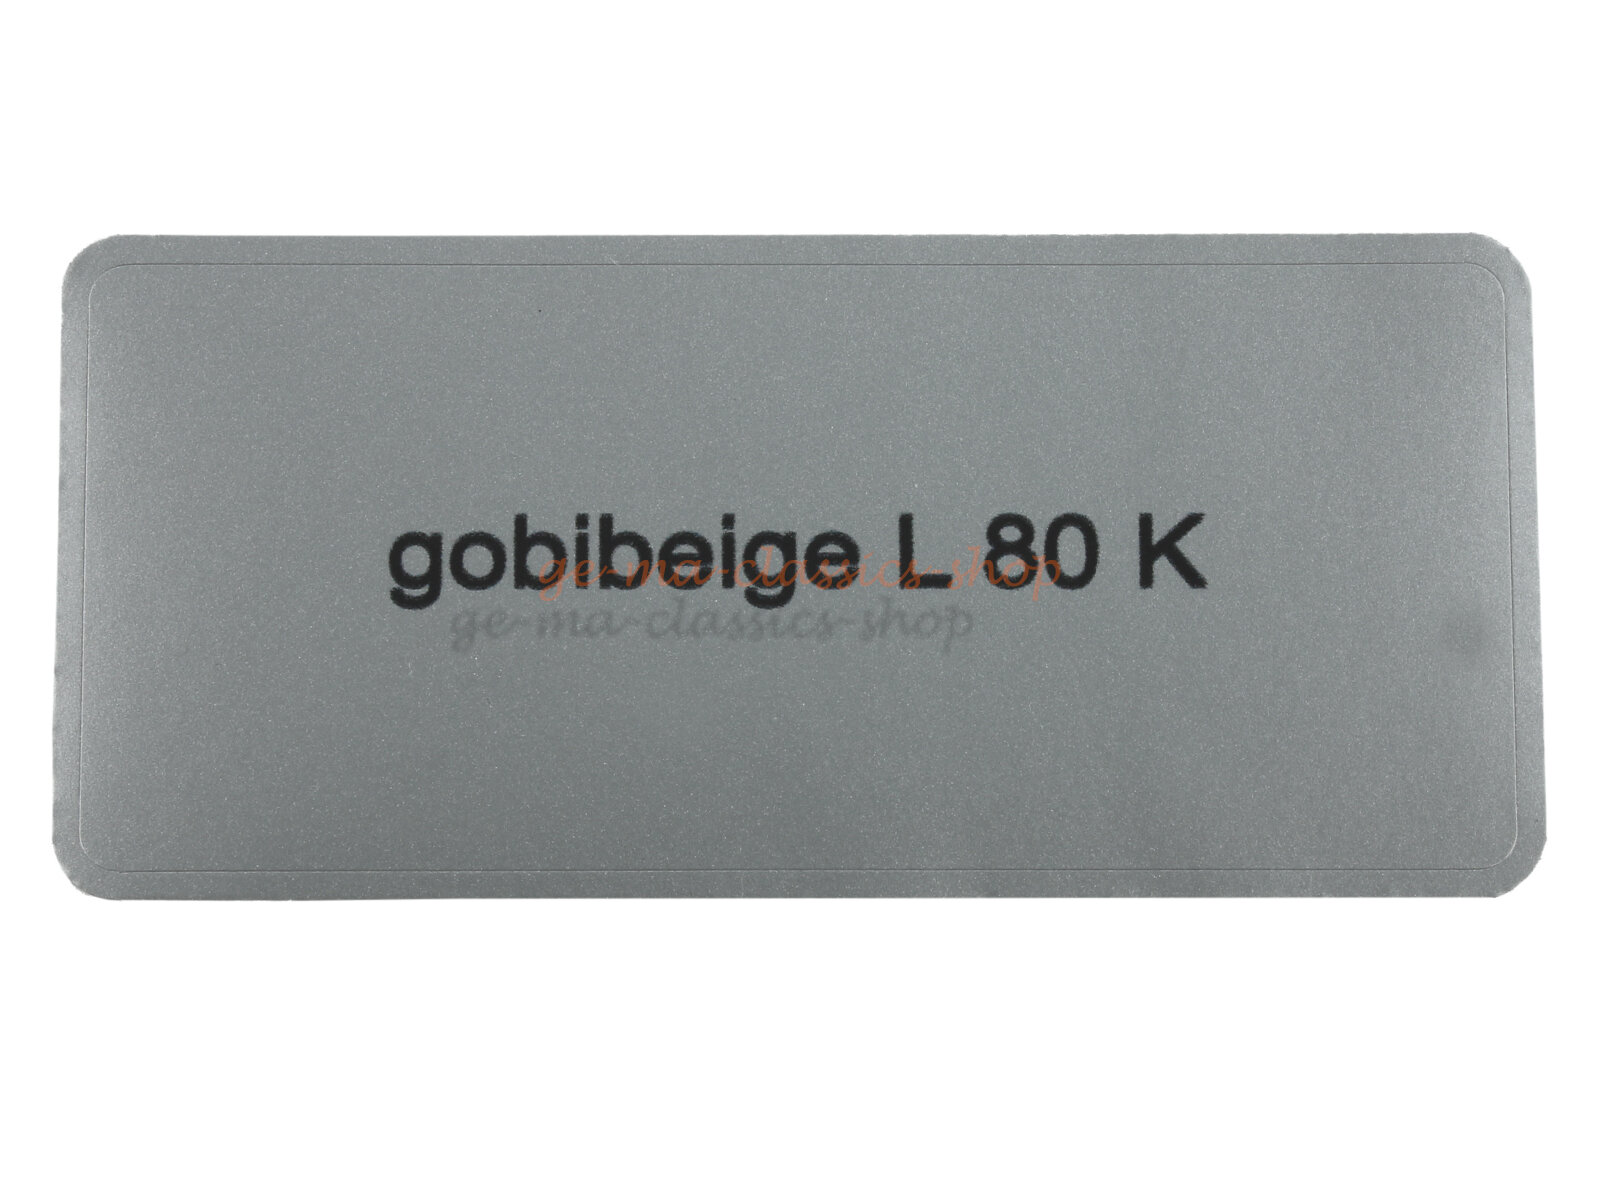 Aufkleber "gobibeige L 80 K" Farbcode Sticker